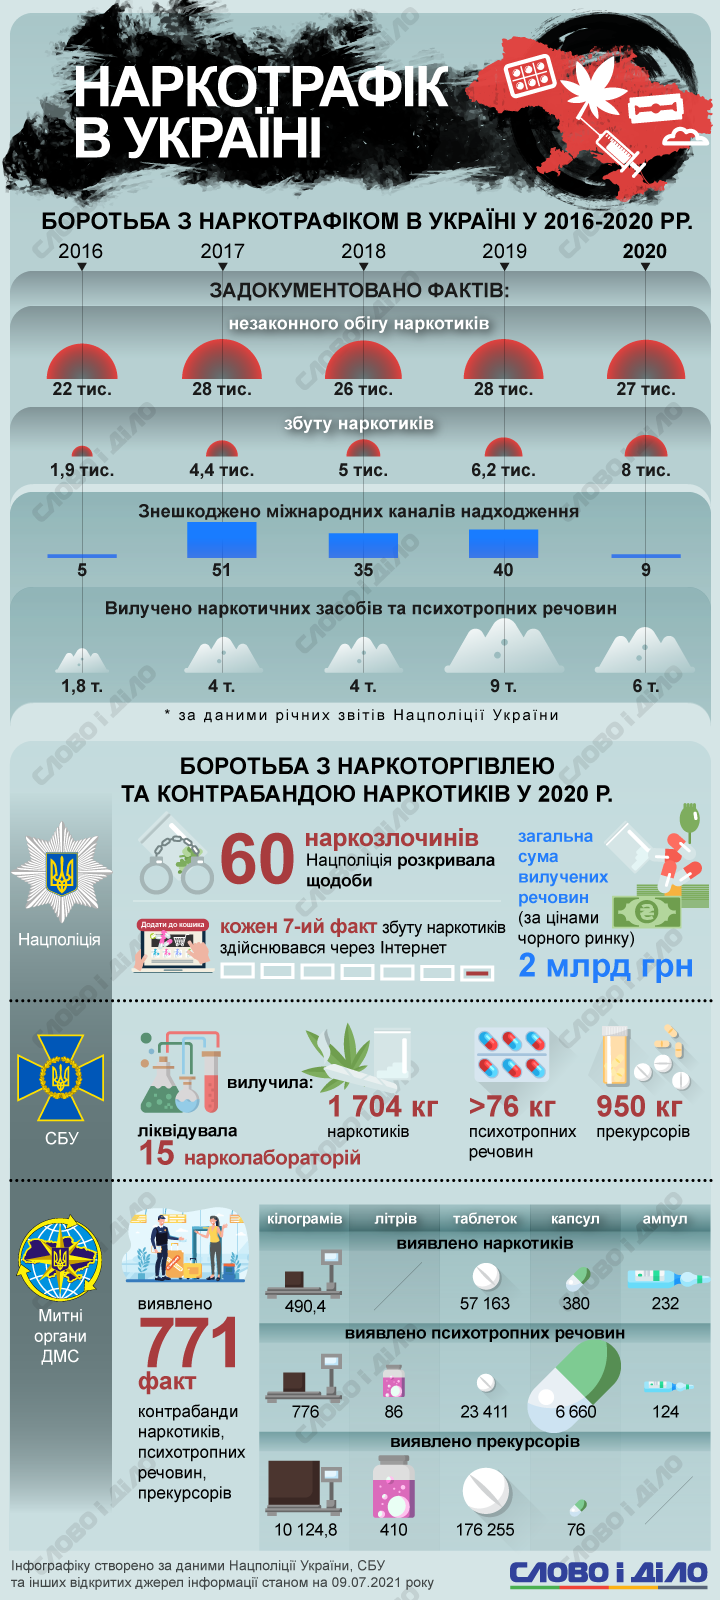 Статистика наркотиков в украине медали мать героине цена